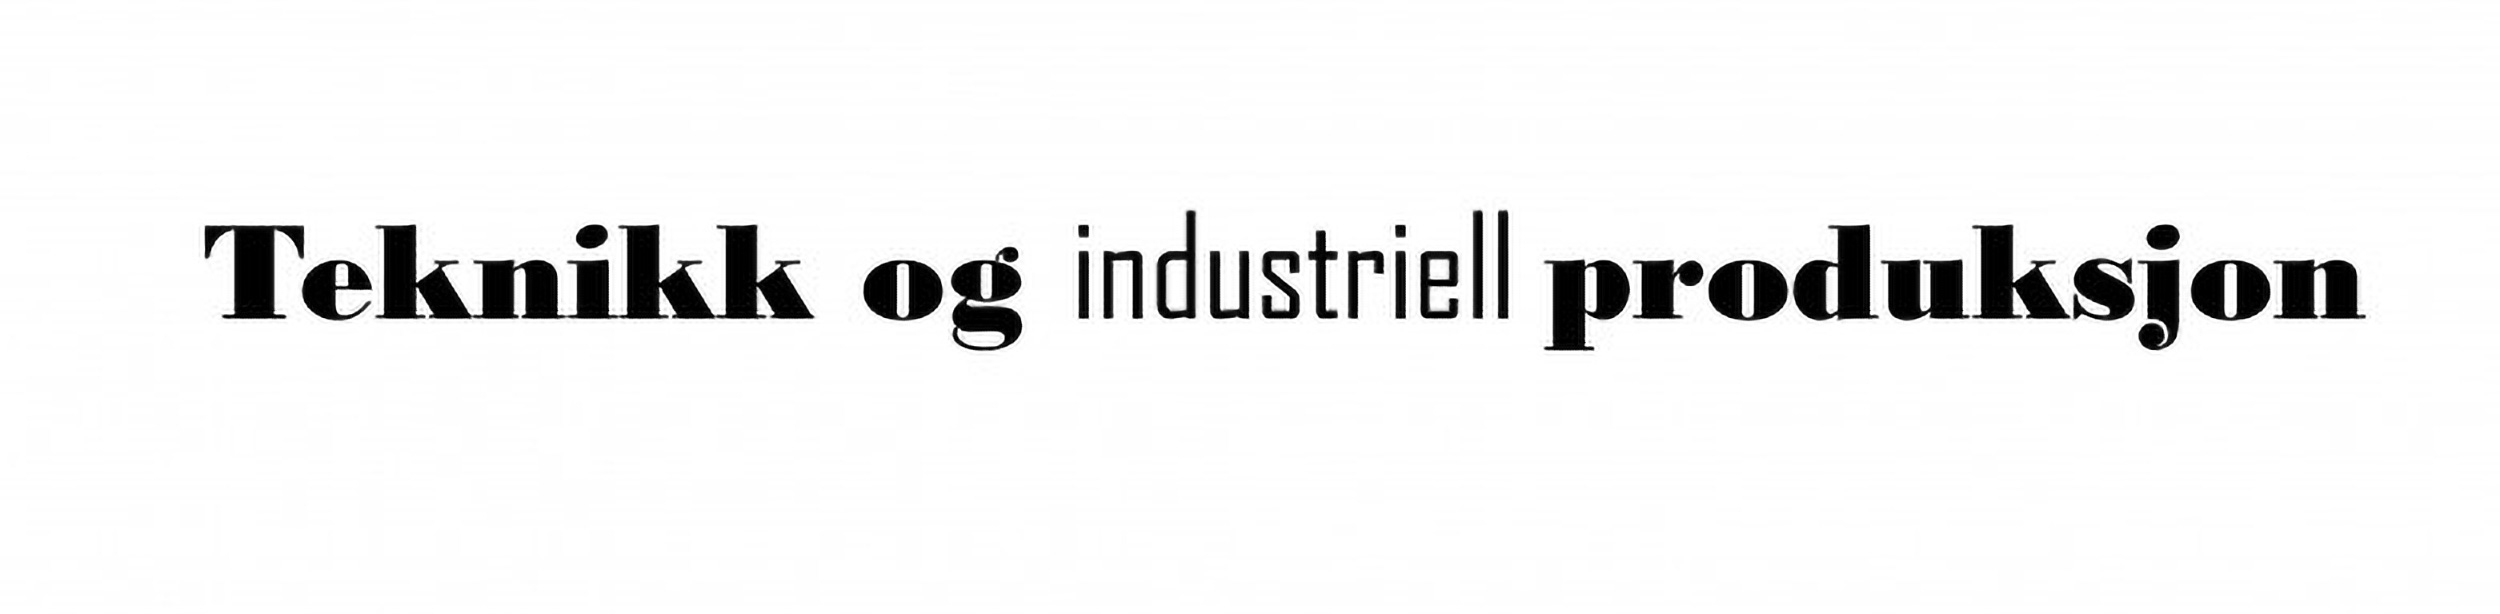 Logo: Teknikk og industriell produksjon